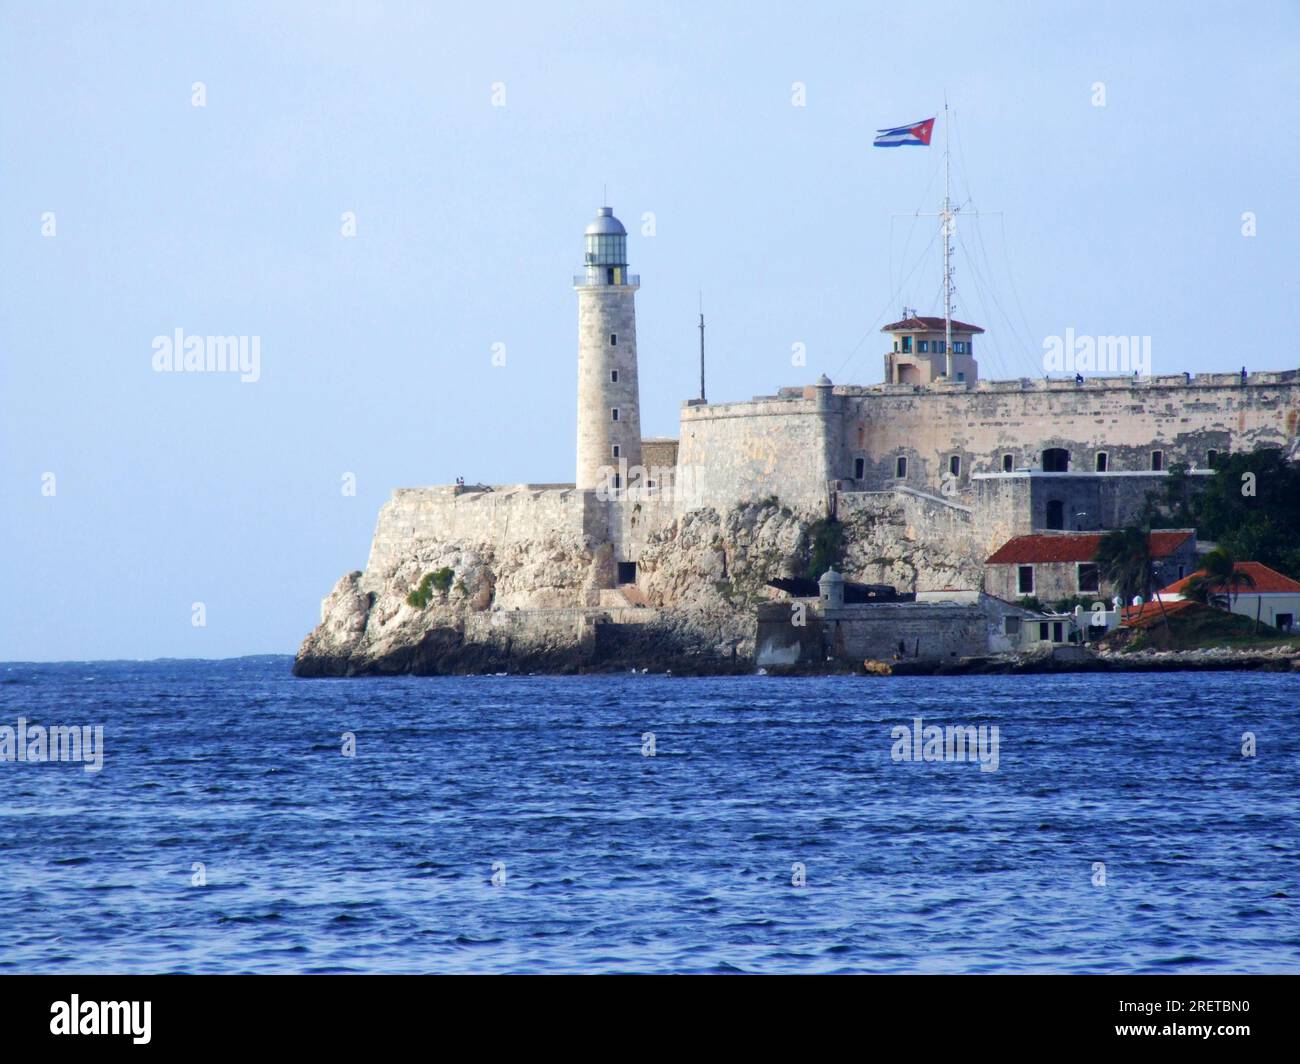 Portrait format of Castillo Del Morro, Carretera de la Cabana, lighthouse  and fortress, Havana, Cuba. Designed by Giovanni Batti Stock Photo - Alamy